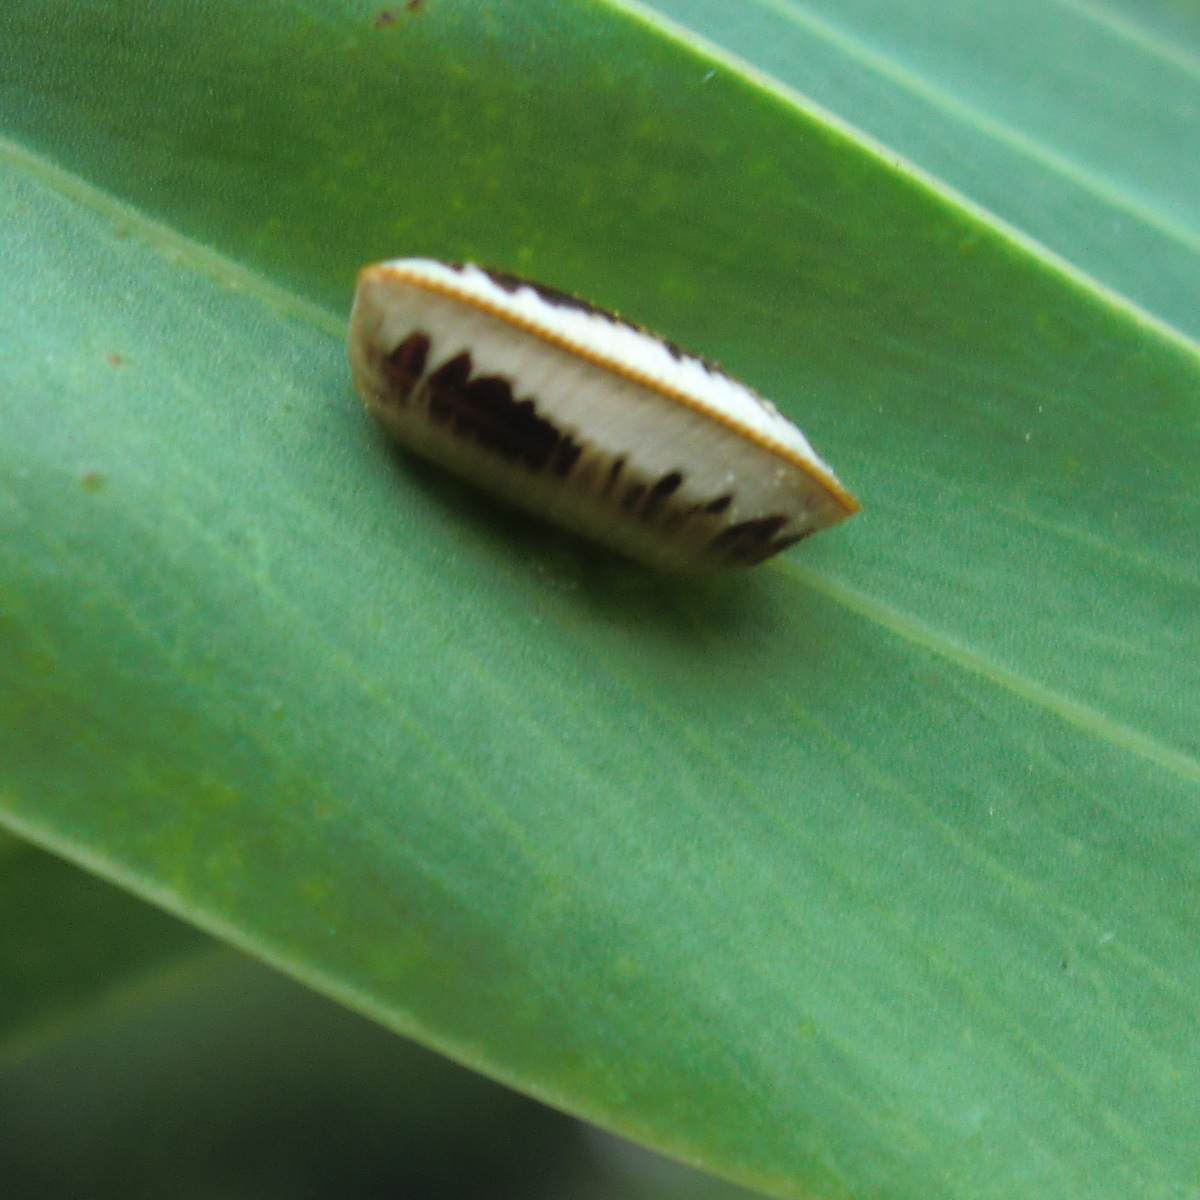 Blattellidae (ootheca)